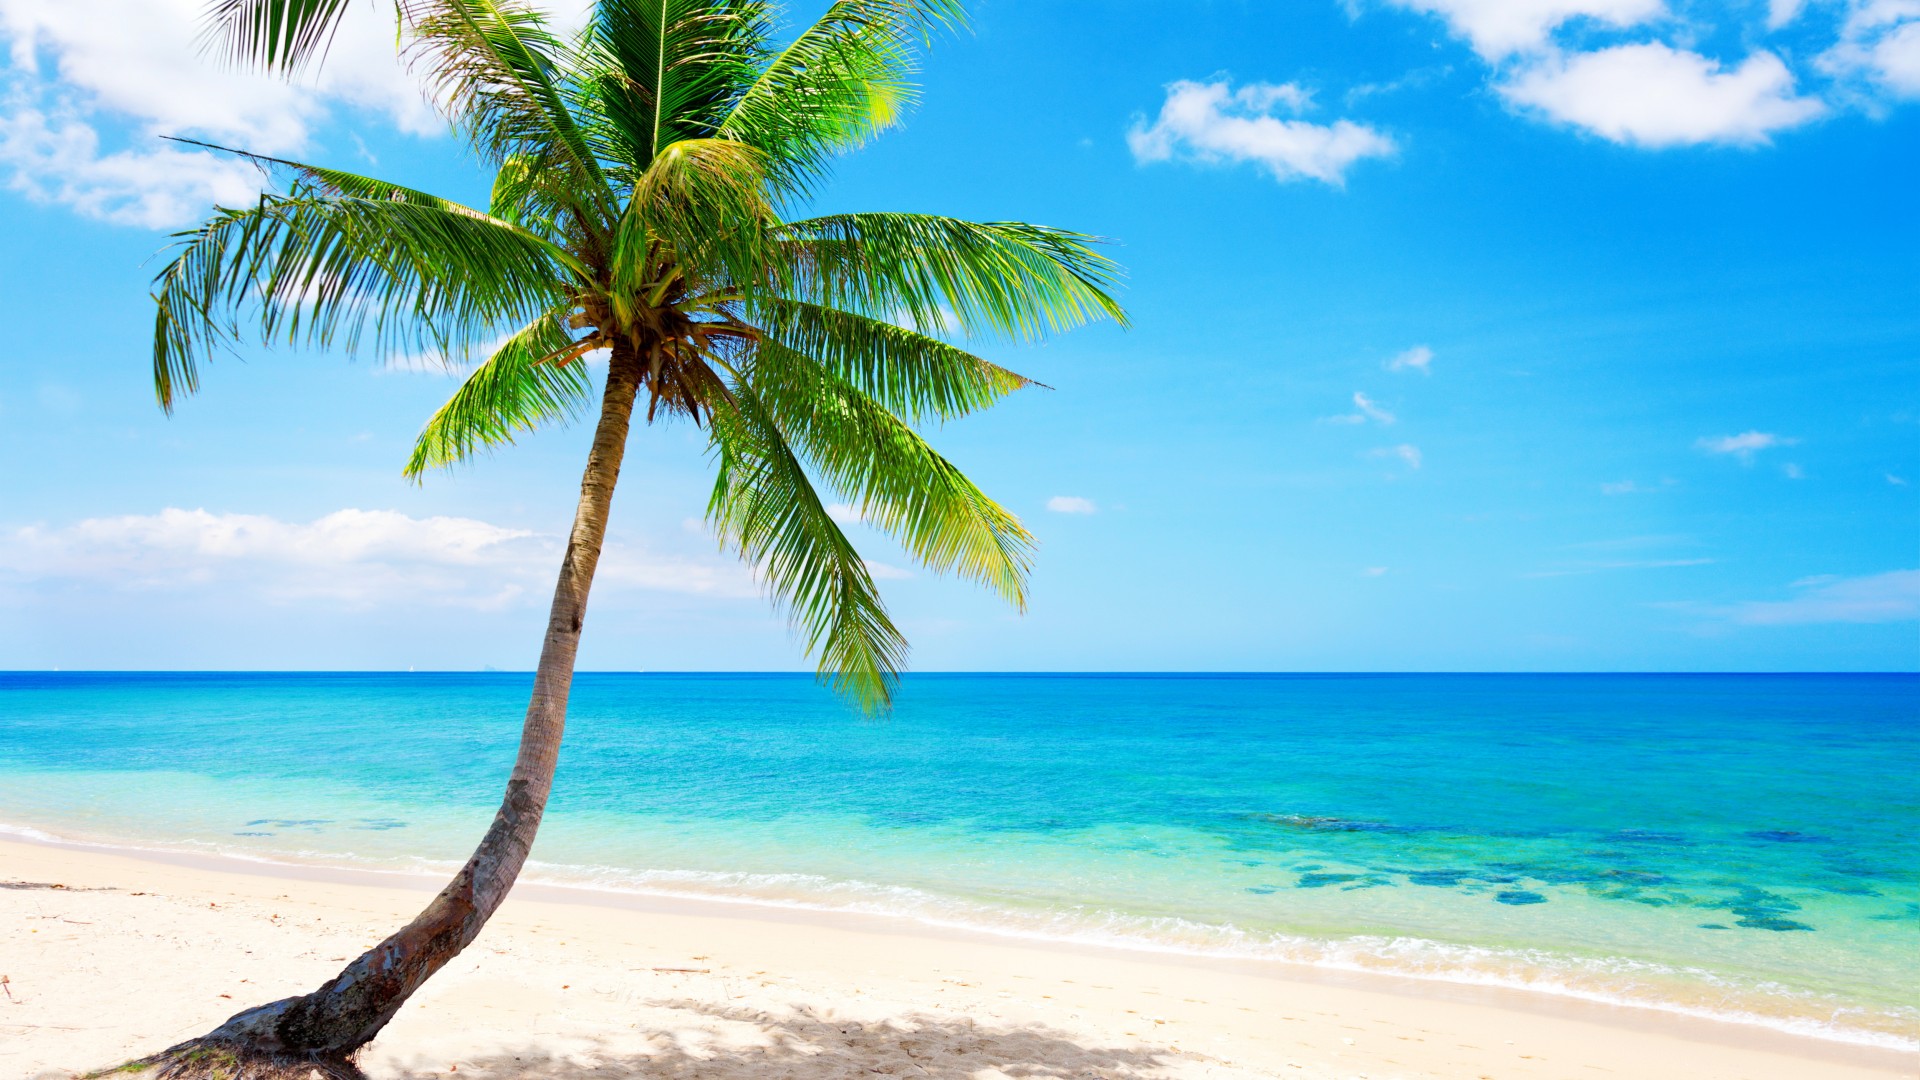 热带天堂,沙滩,海岸,蓝色大海,翡翠,棕榈树,主题自然风光桌面壁纸